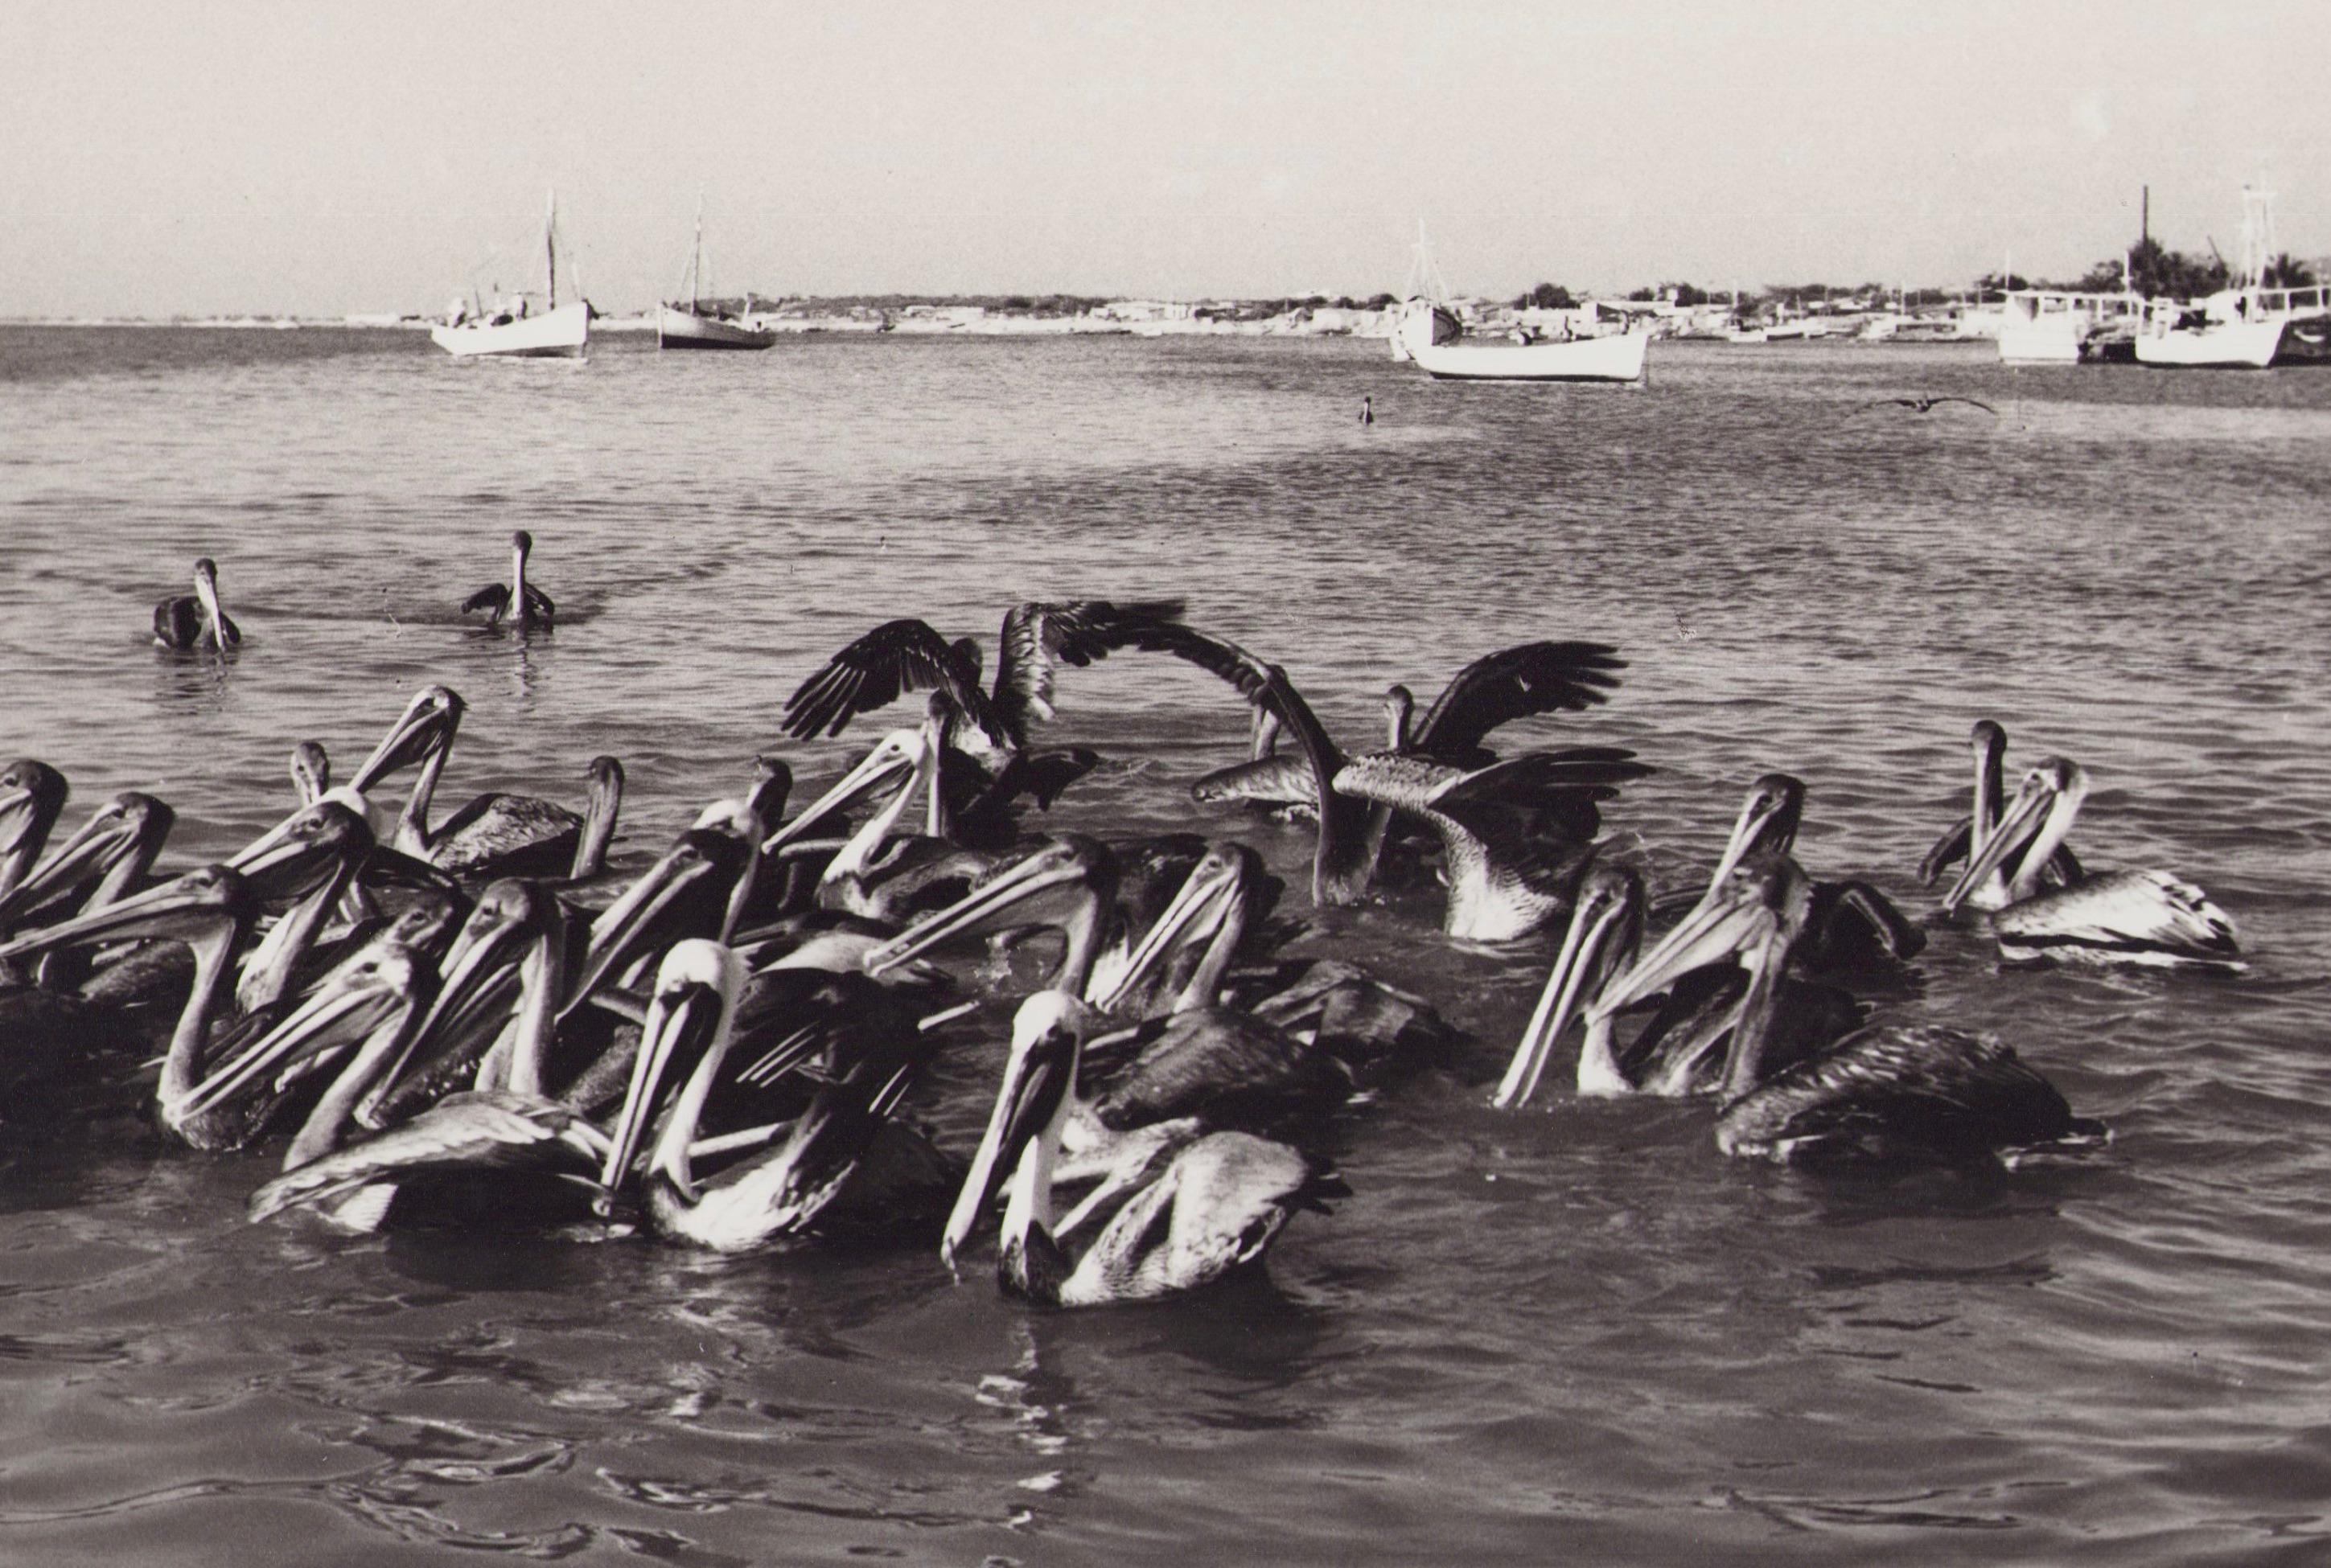 Venezuela, Pelicans, Black and White Photography, 1960s, 19 x 30, 1 cm - Gray Portrait Photograph by Hanna Seidel